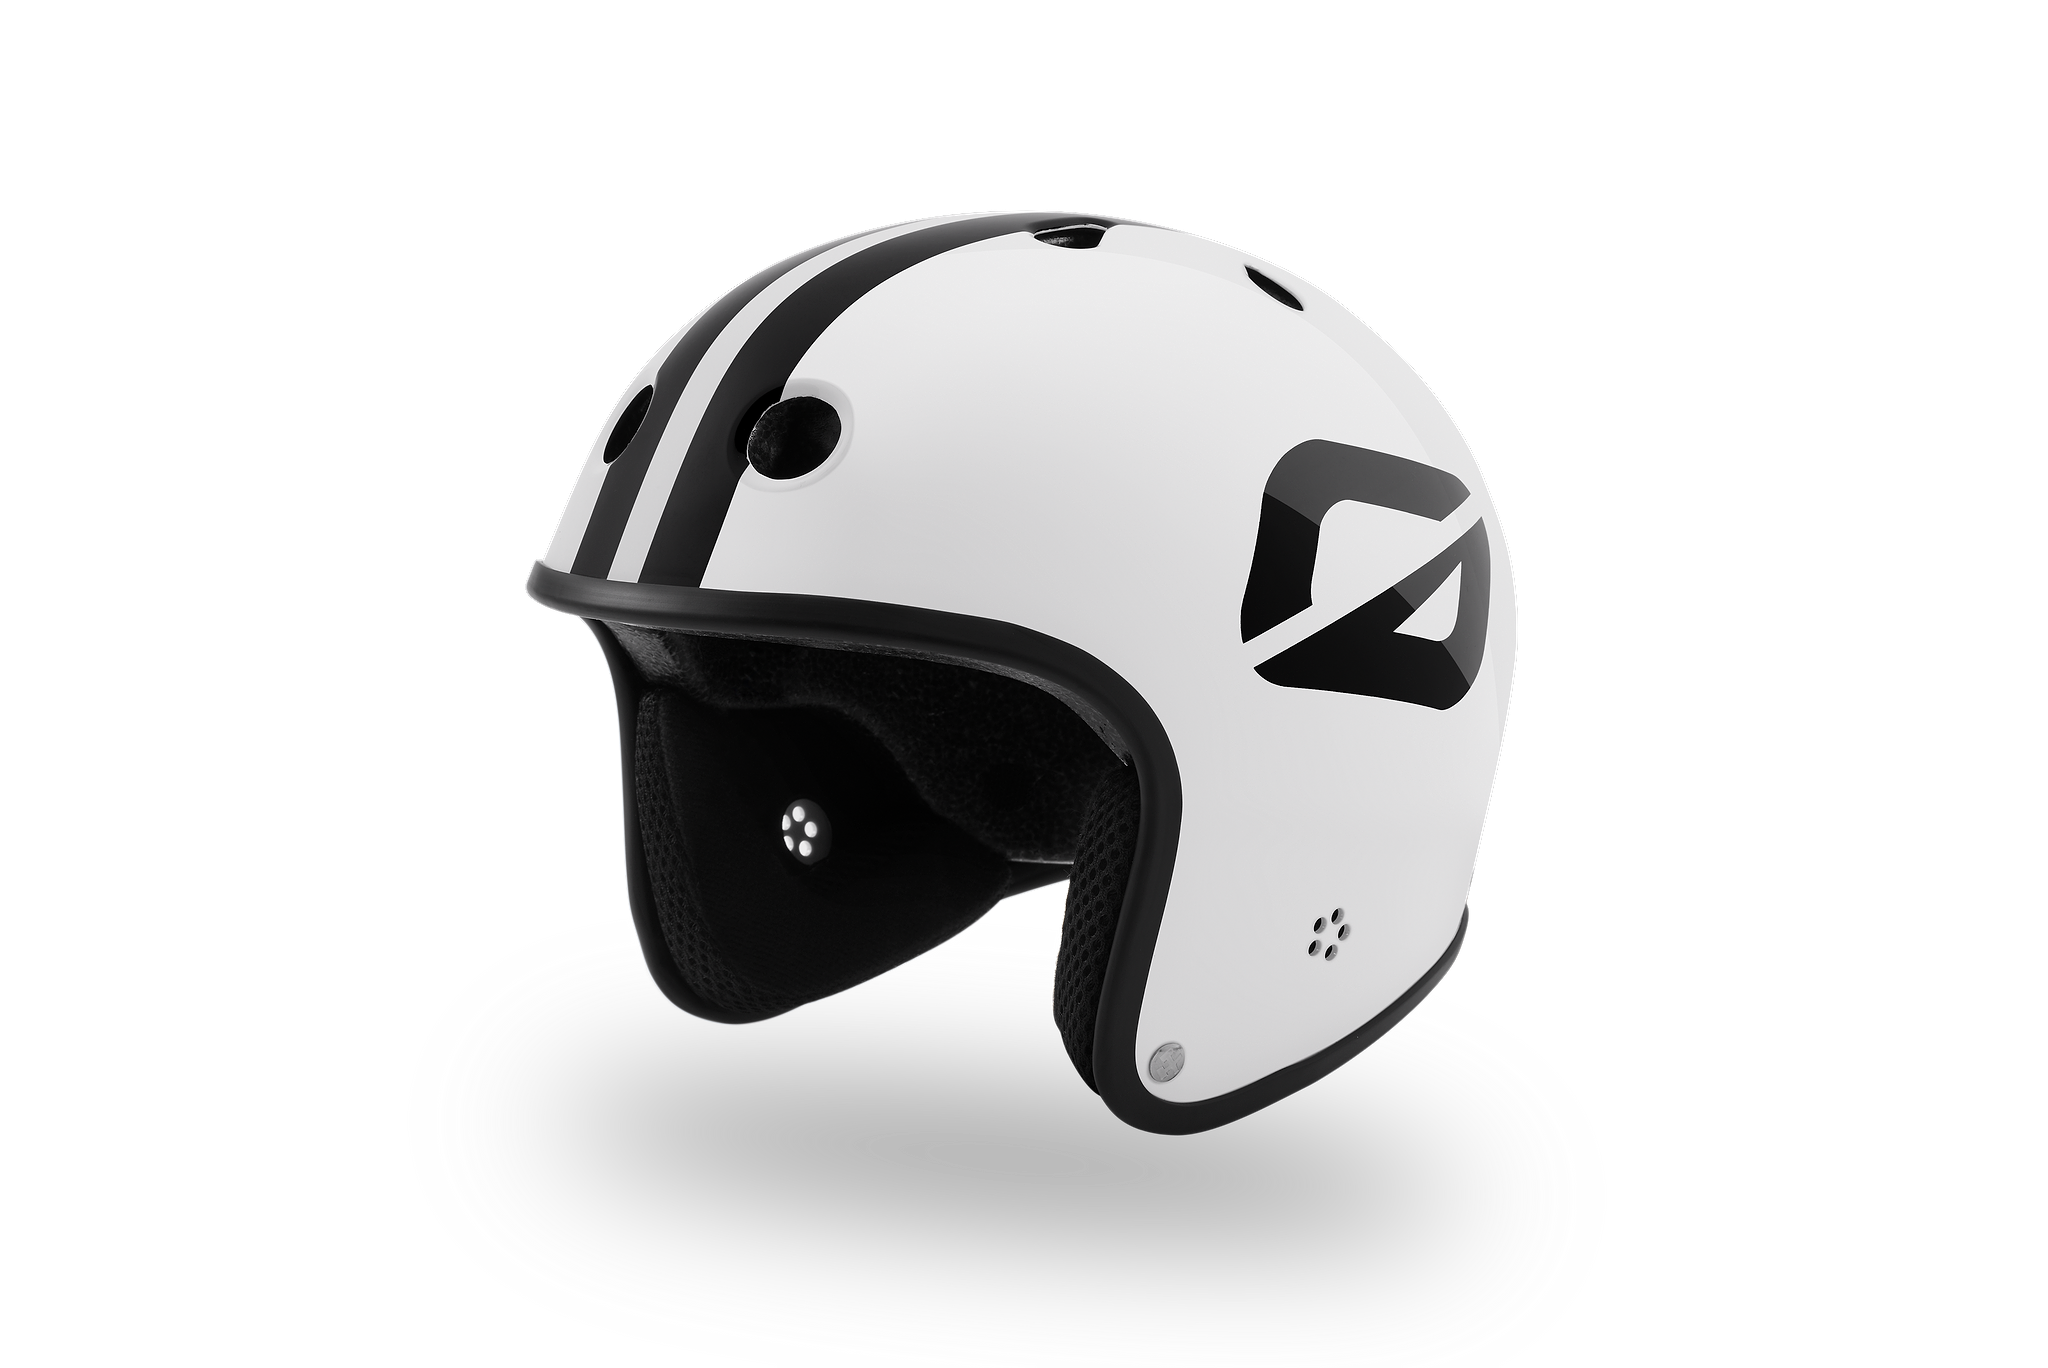 Onewheel S1 Retro Helmet